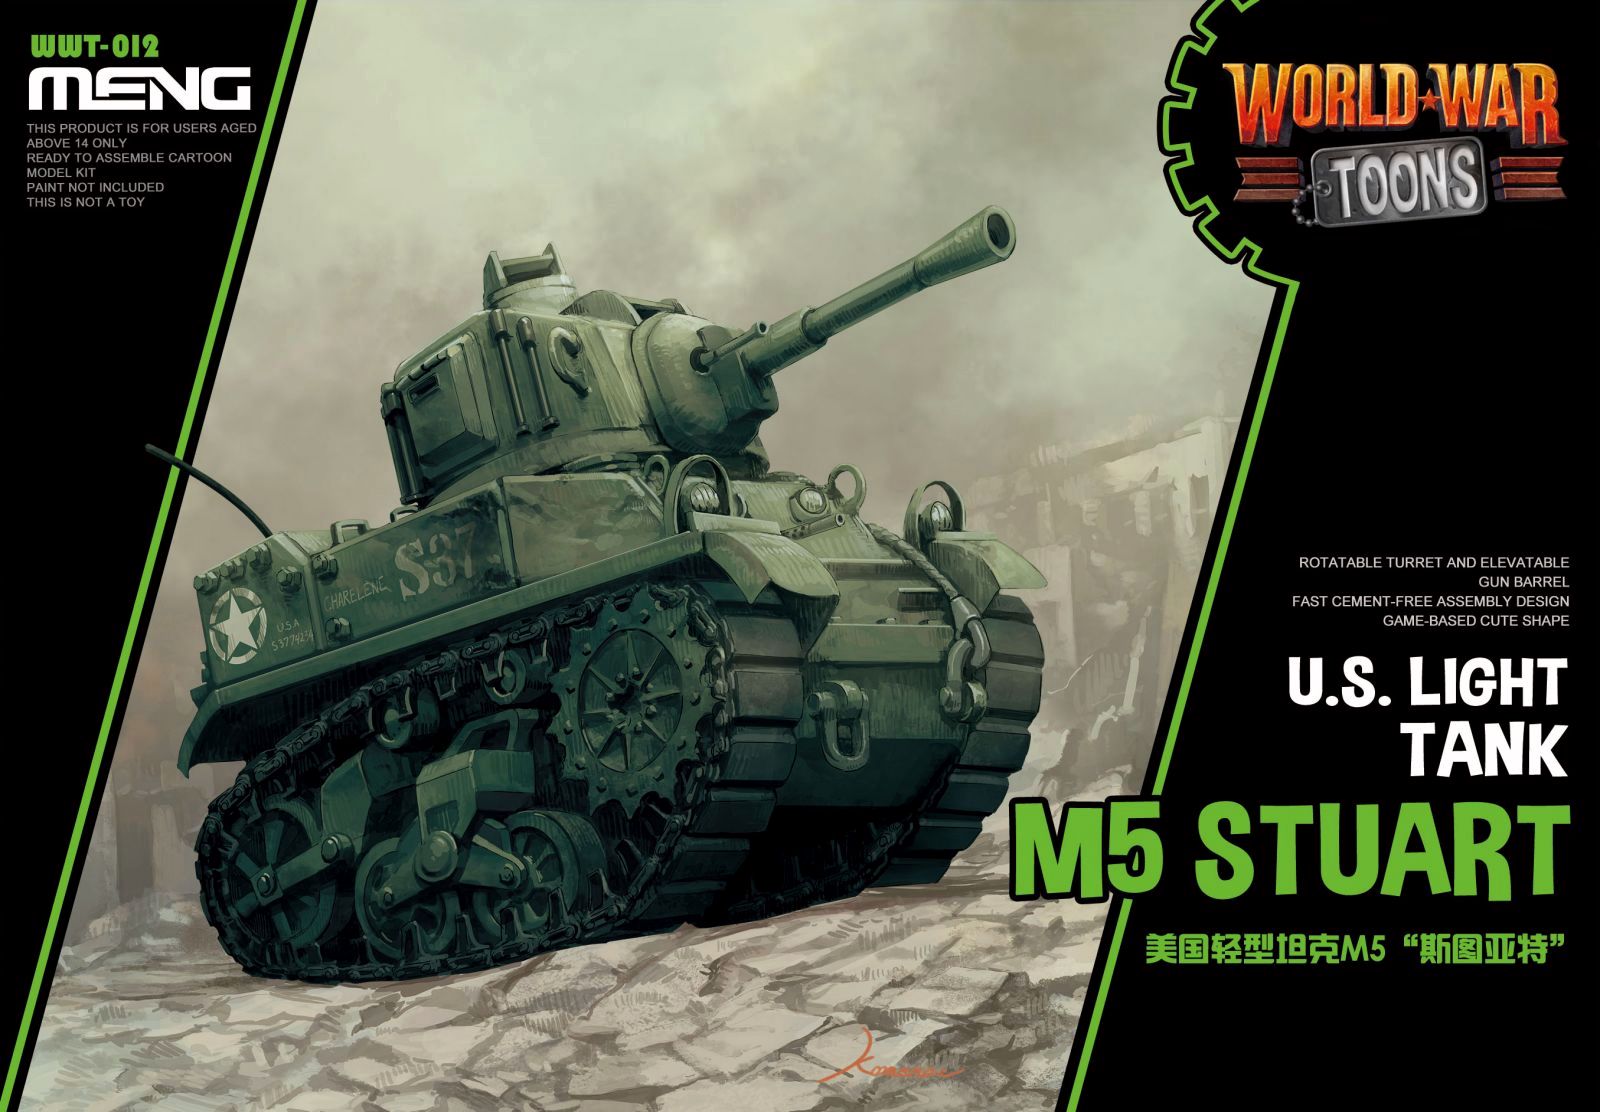 U.S. Light Tank M5 Stuart (Cartoon model)